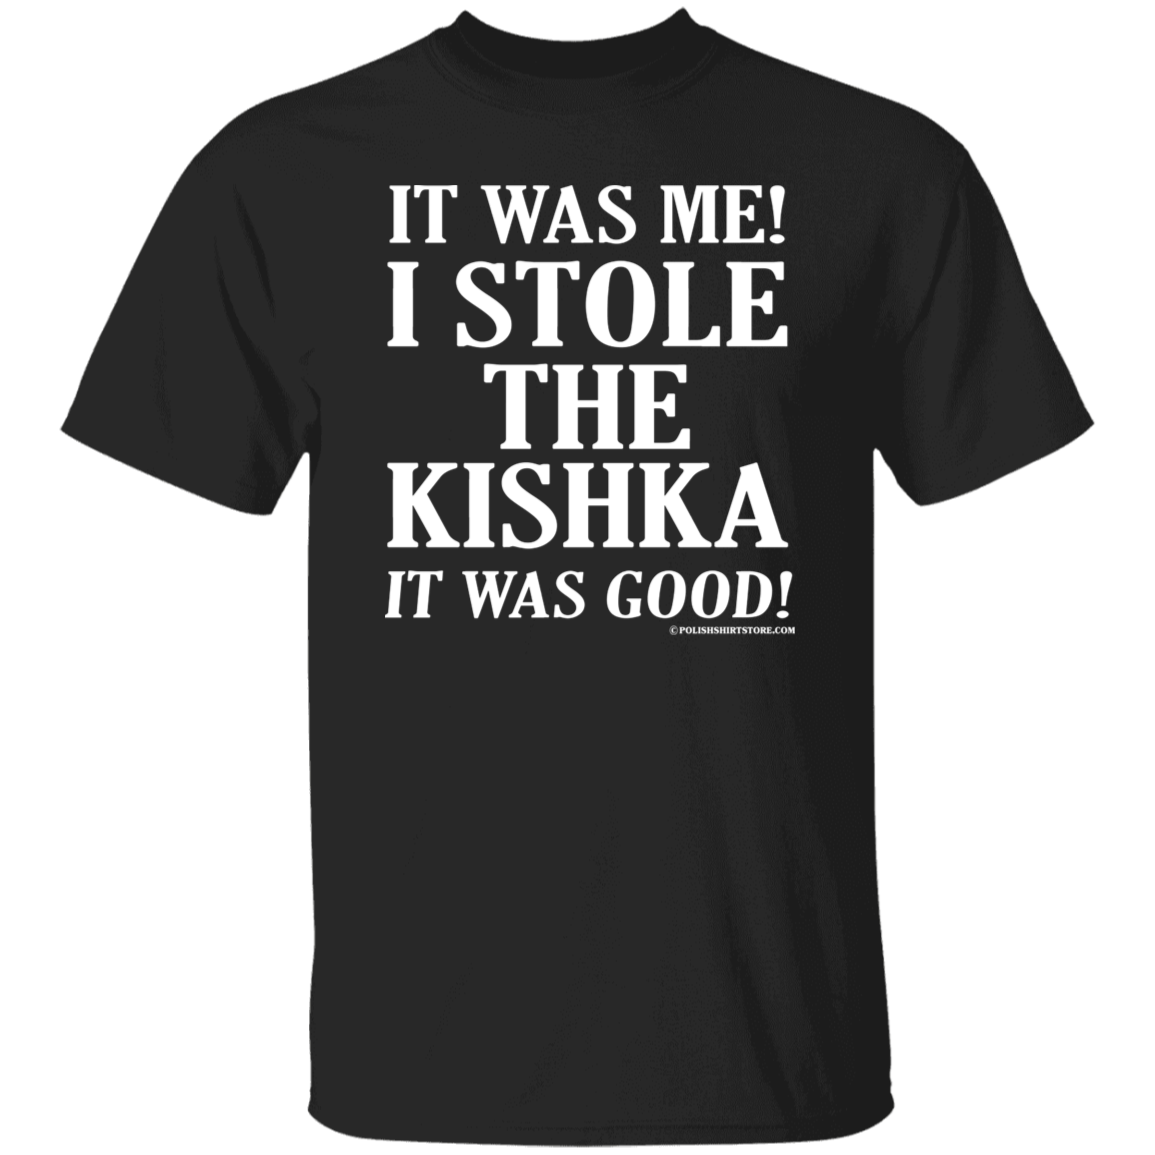 It Was Me I Stole The Kishka It Was Good Apparel CustomCat G500 5.3 oz. T-Shirt Black S